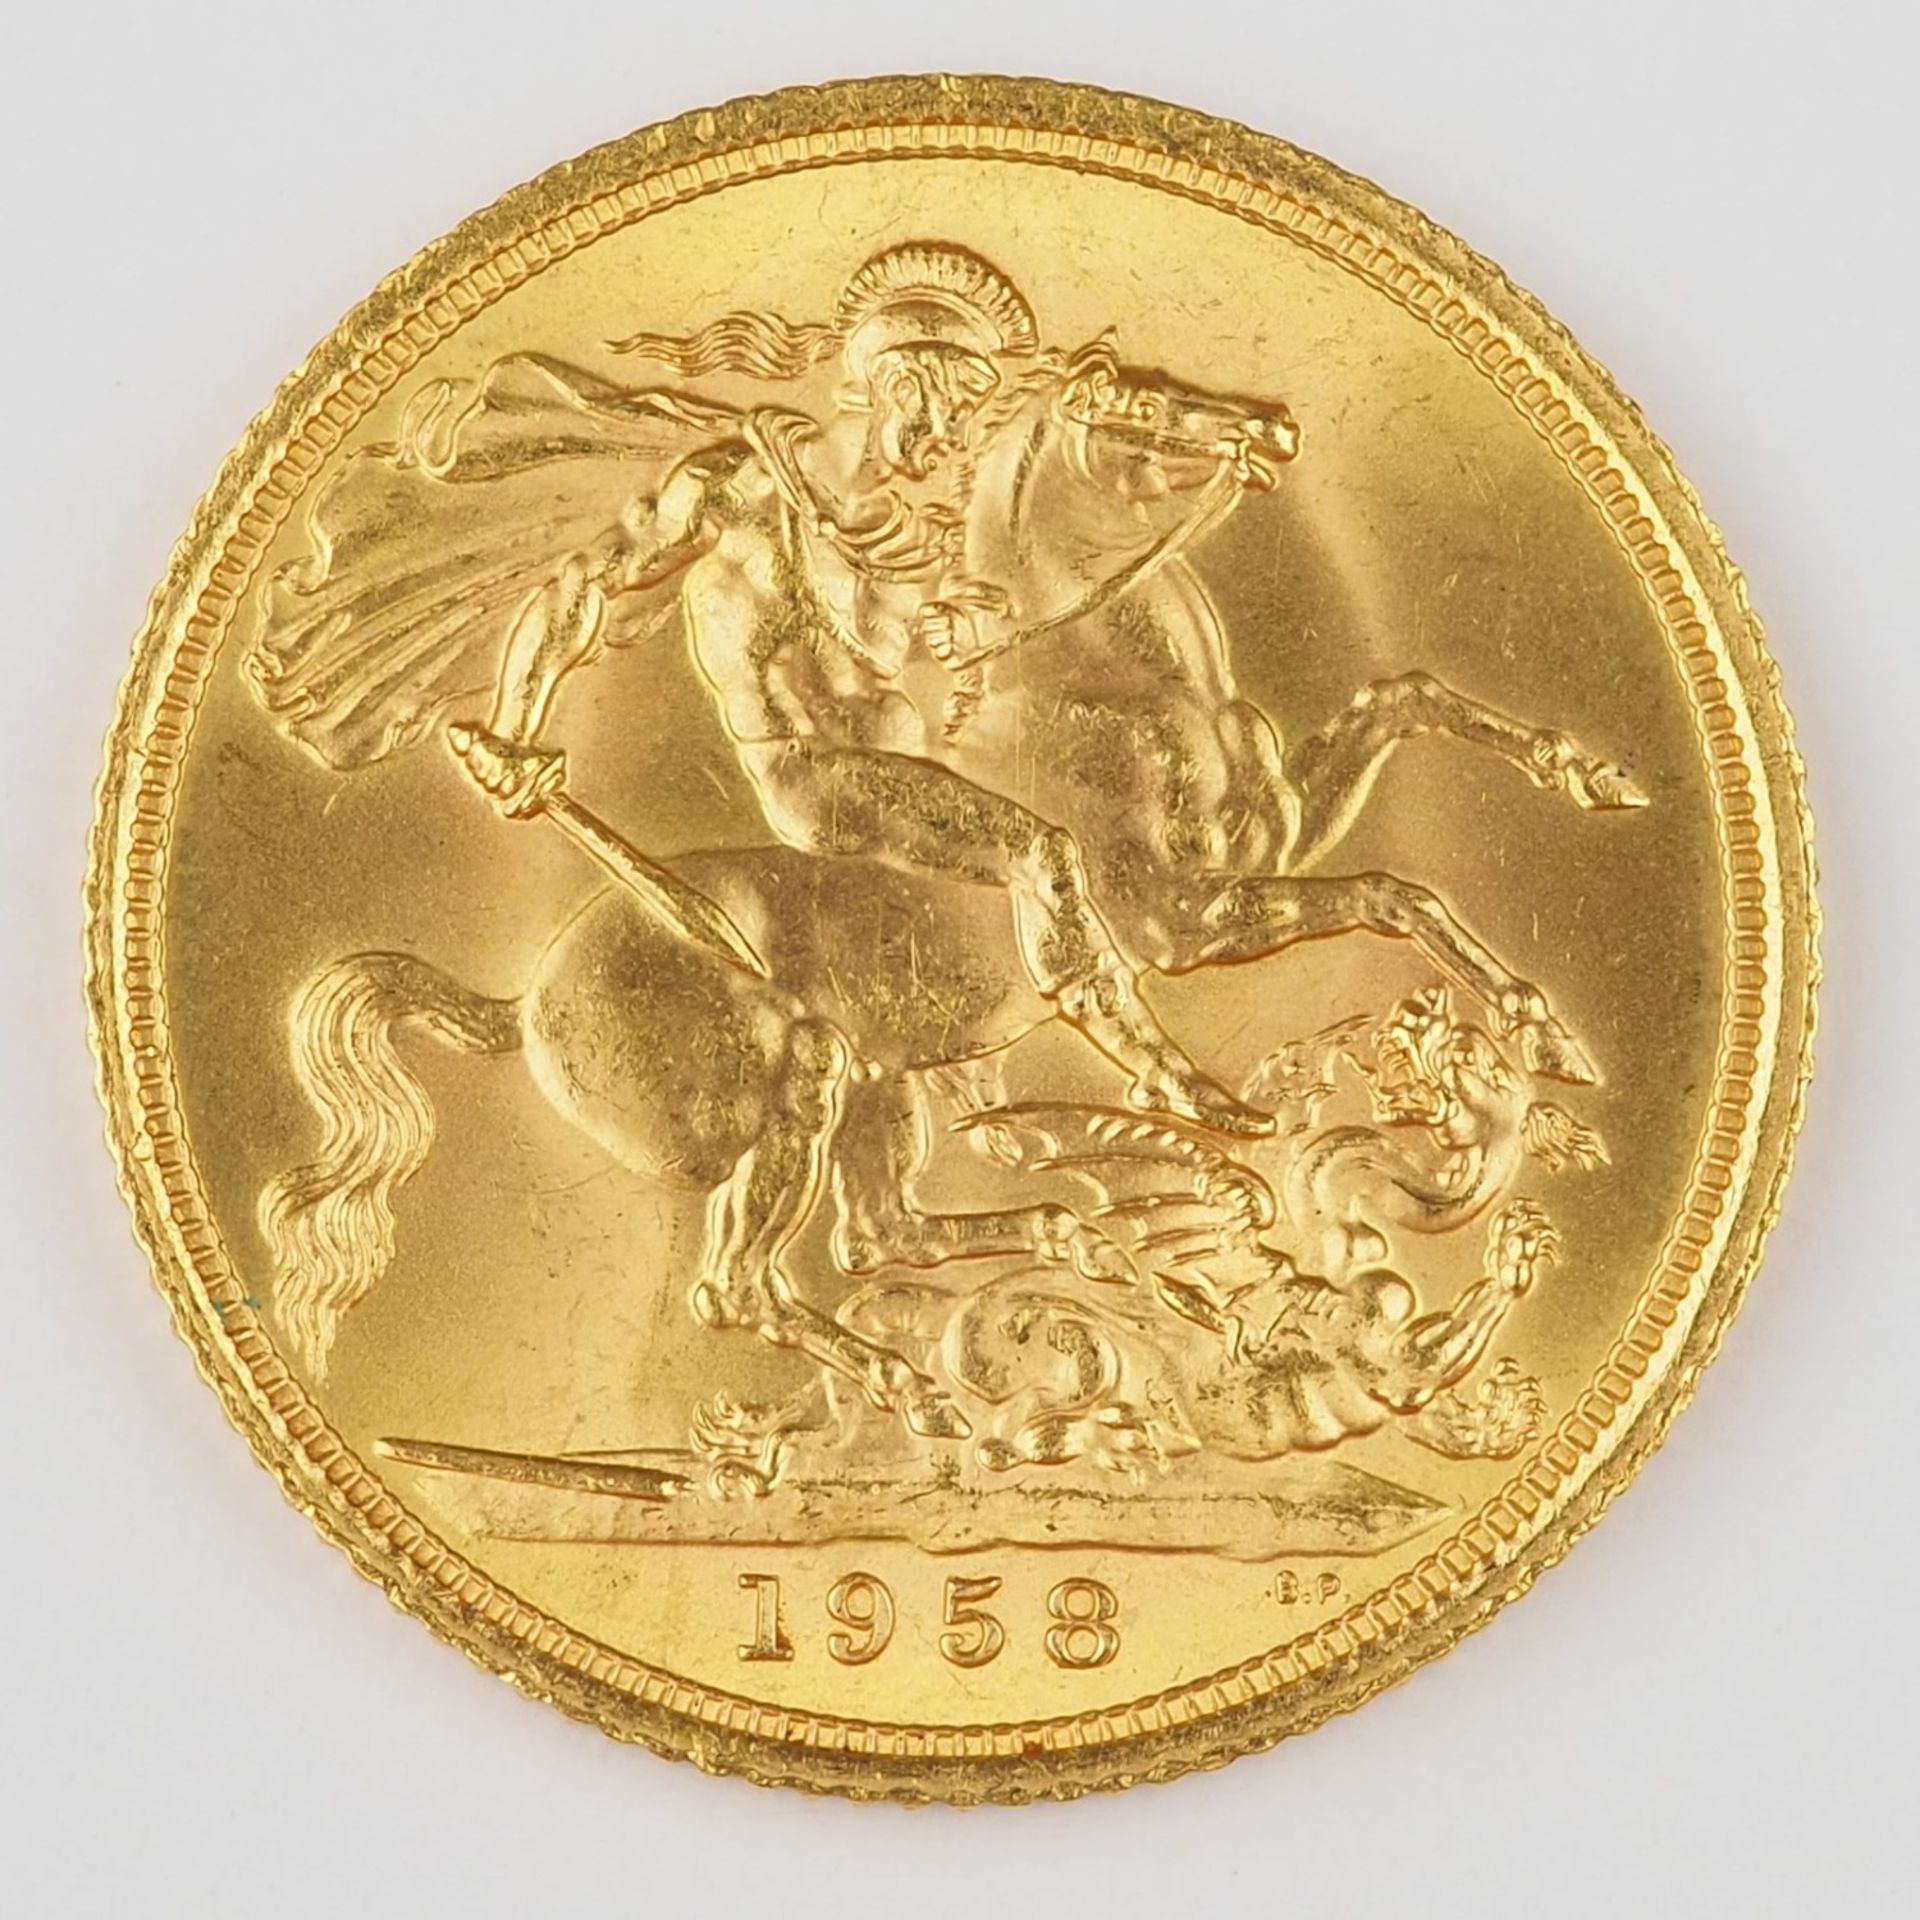 Goldmünze 1958 Englischer Sovereign, 1 Pfund - Bild 2 aus 2